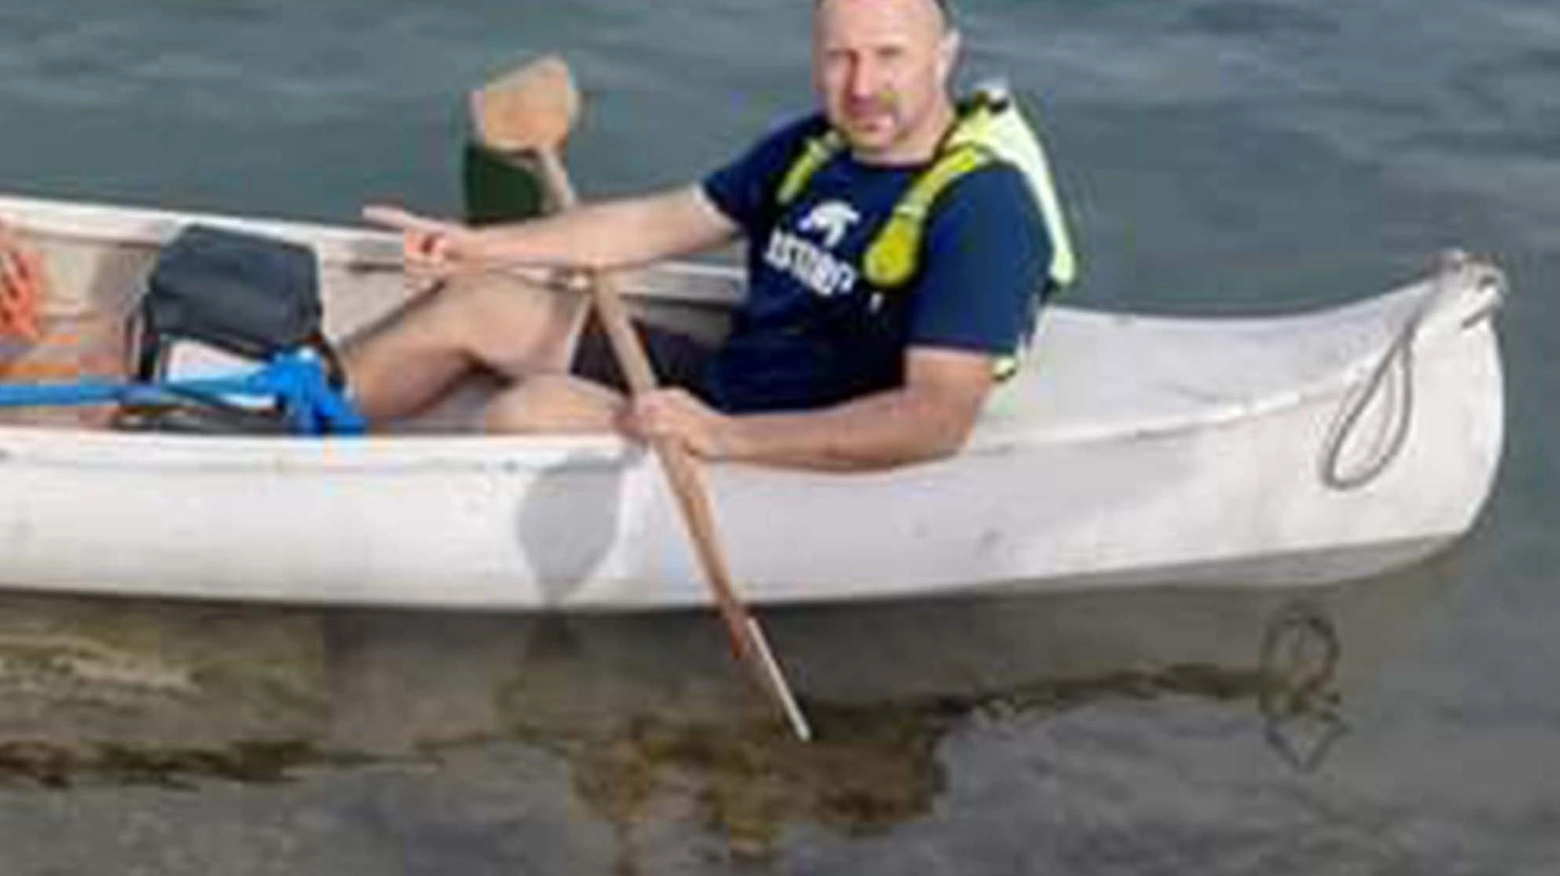 

Salvataggio miracoloso a Cassano d'Adda: 3 salvati col kayak dall'annegamento